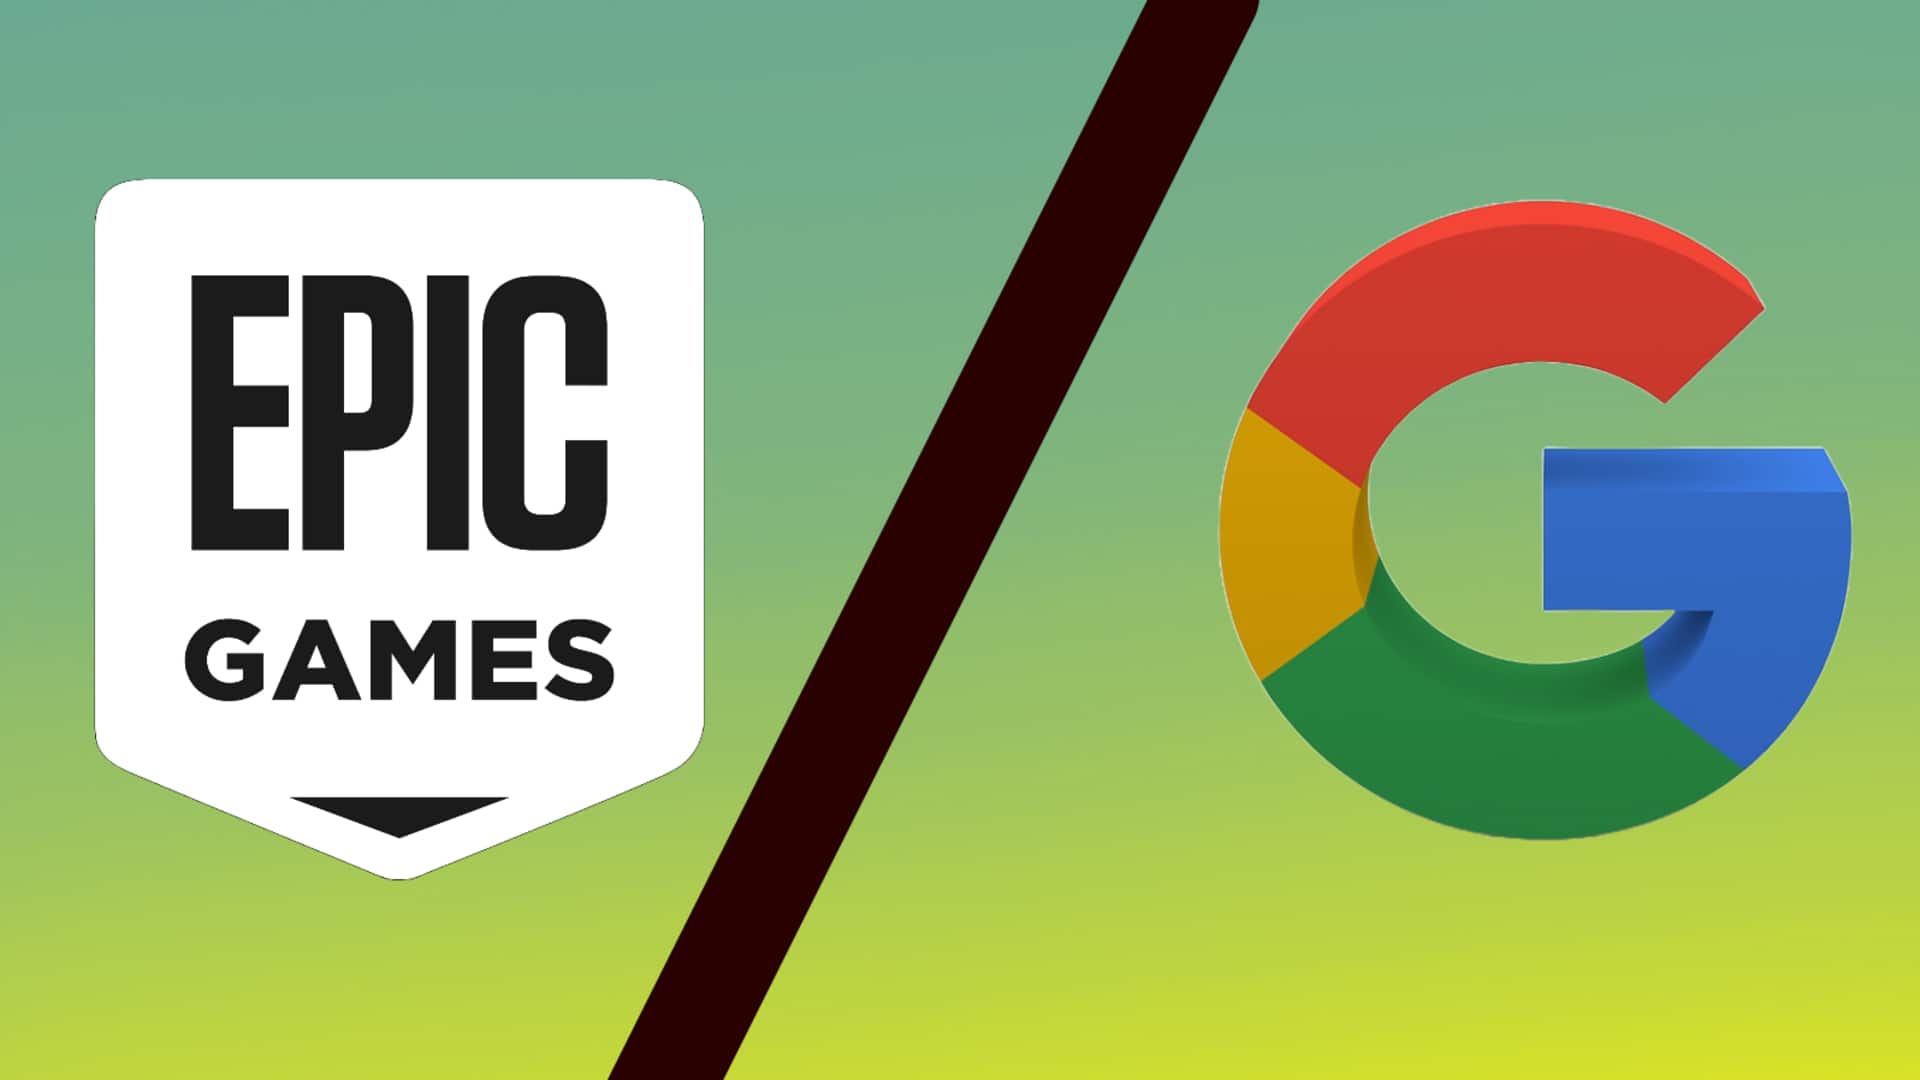 एपिक गेम्स से हारी गूगल, अदालत ने कहा- ऐप स्टोर बाजार में गूगल का अवैध एकाधिकार 